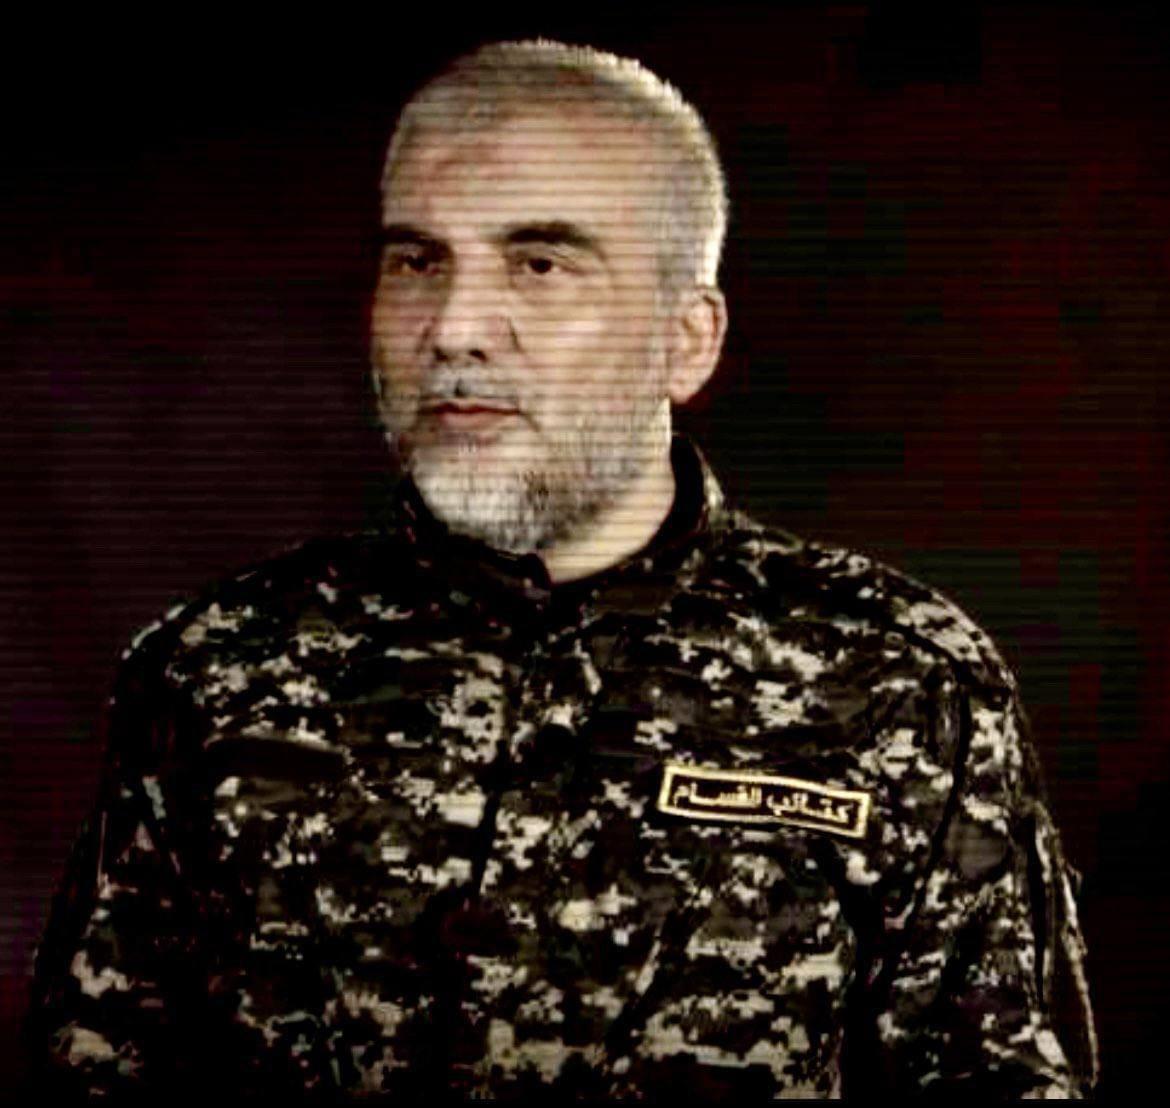 القائد أبو أنس الغندور.. قائد لواء الشمال شهيدًا بعد 39 عامًا من مقارعة العدو